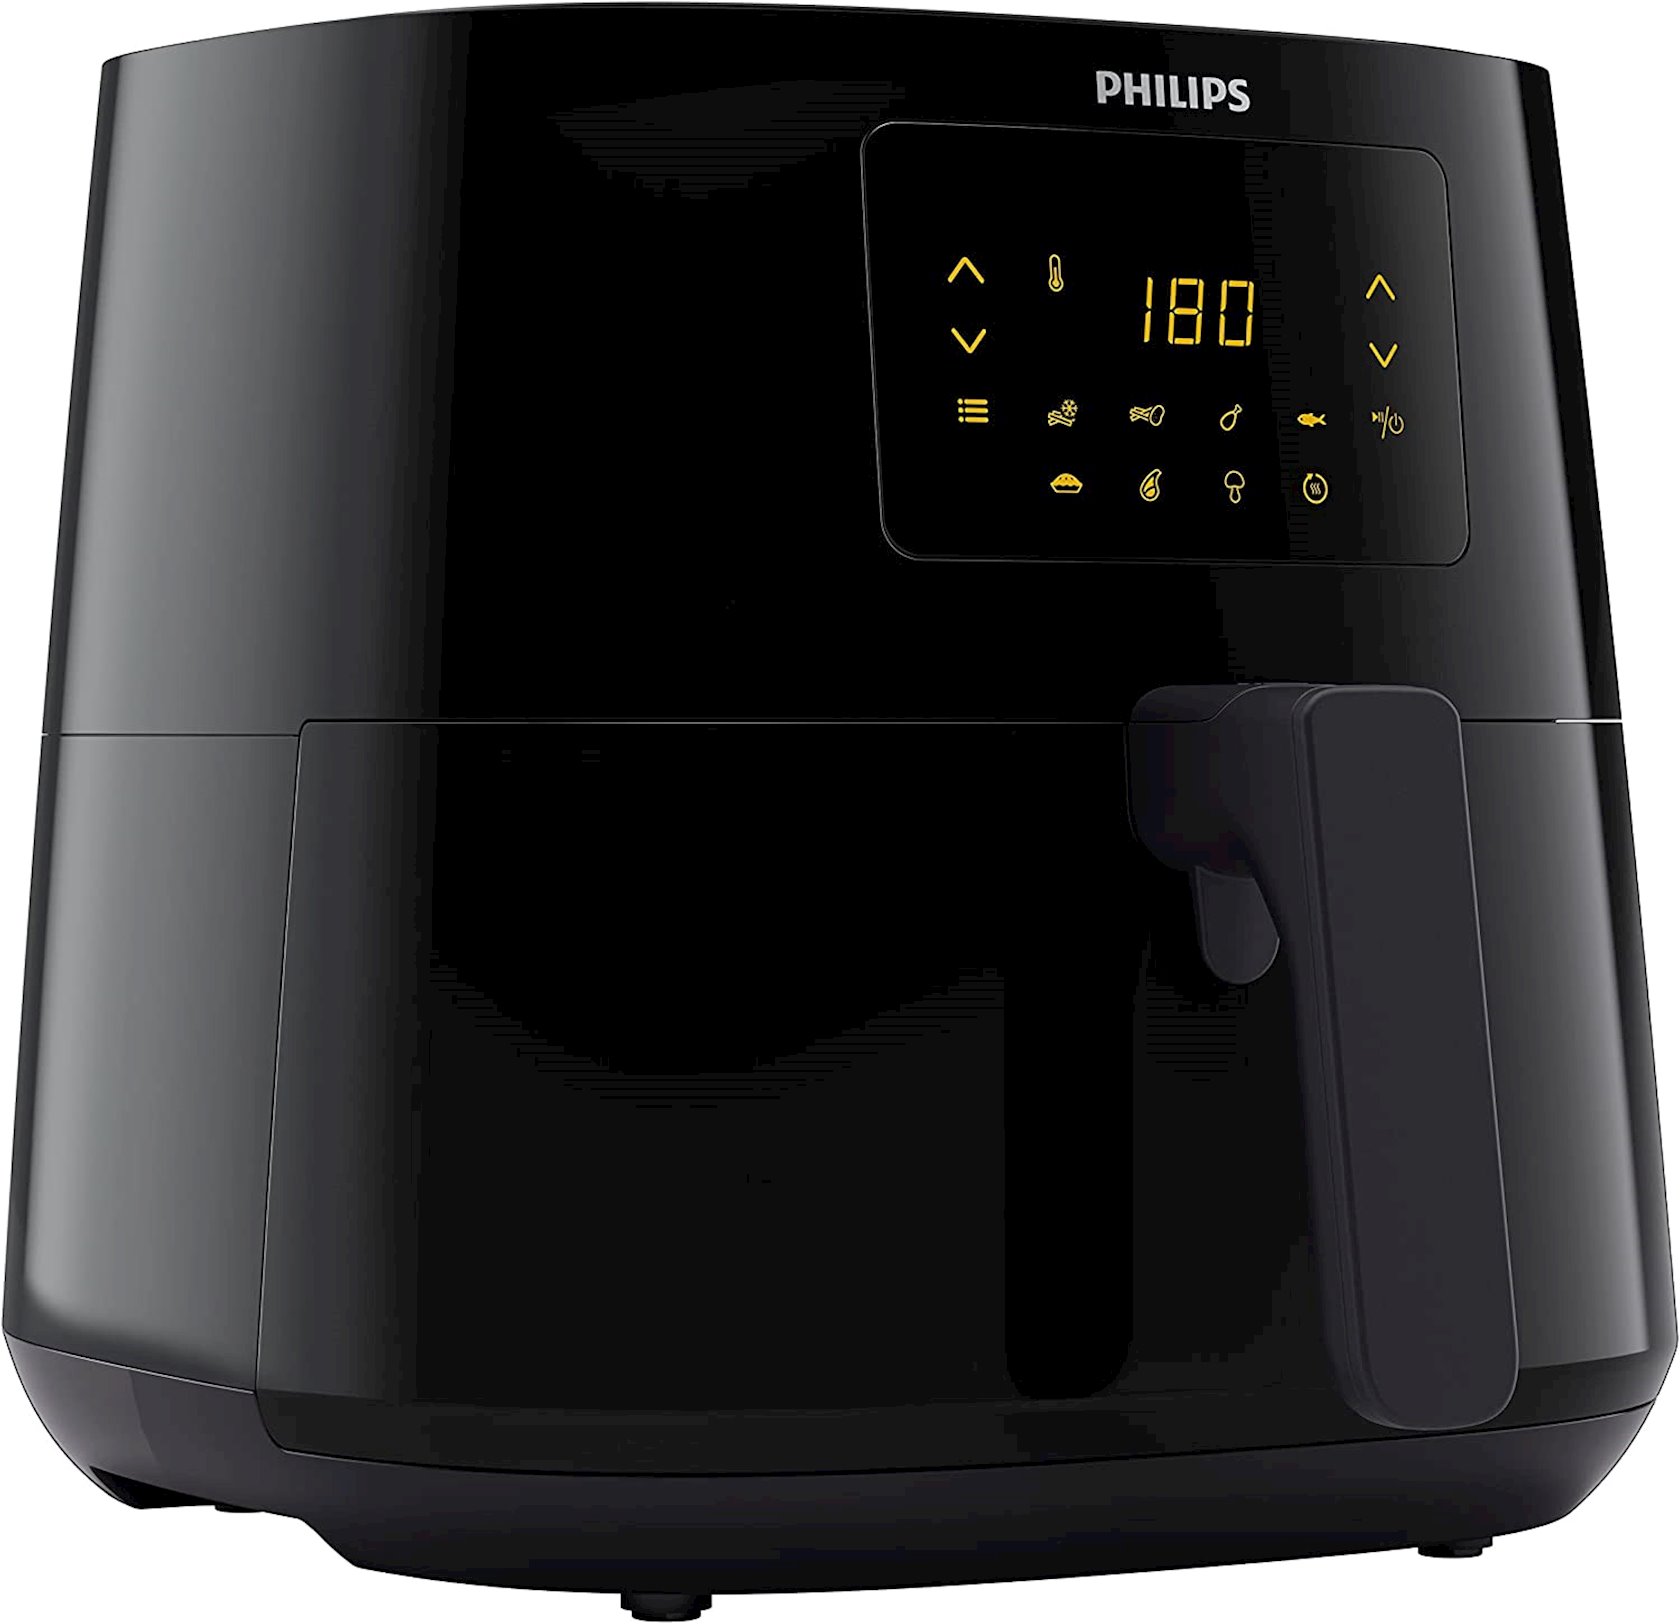 Аэрофритюрница Philips HD9270/90 - купить в Баку. Цена, обзор, отзывы,  продажа